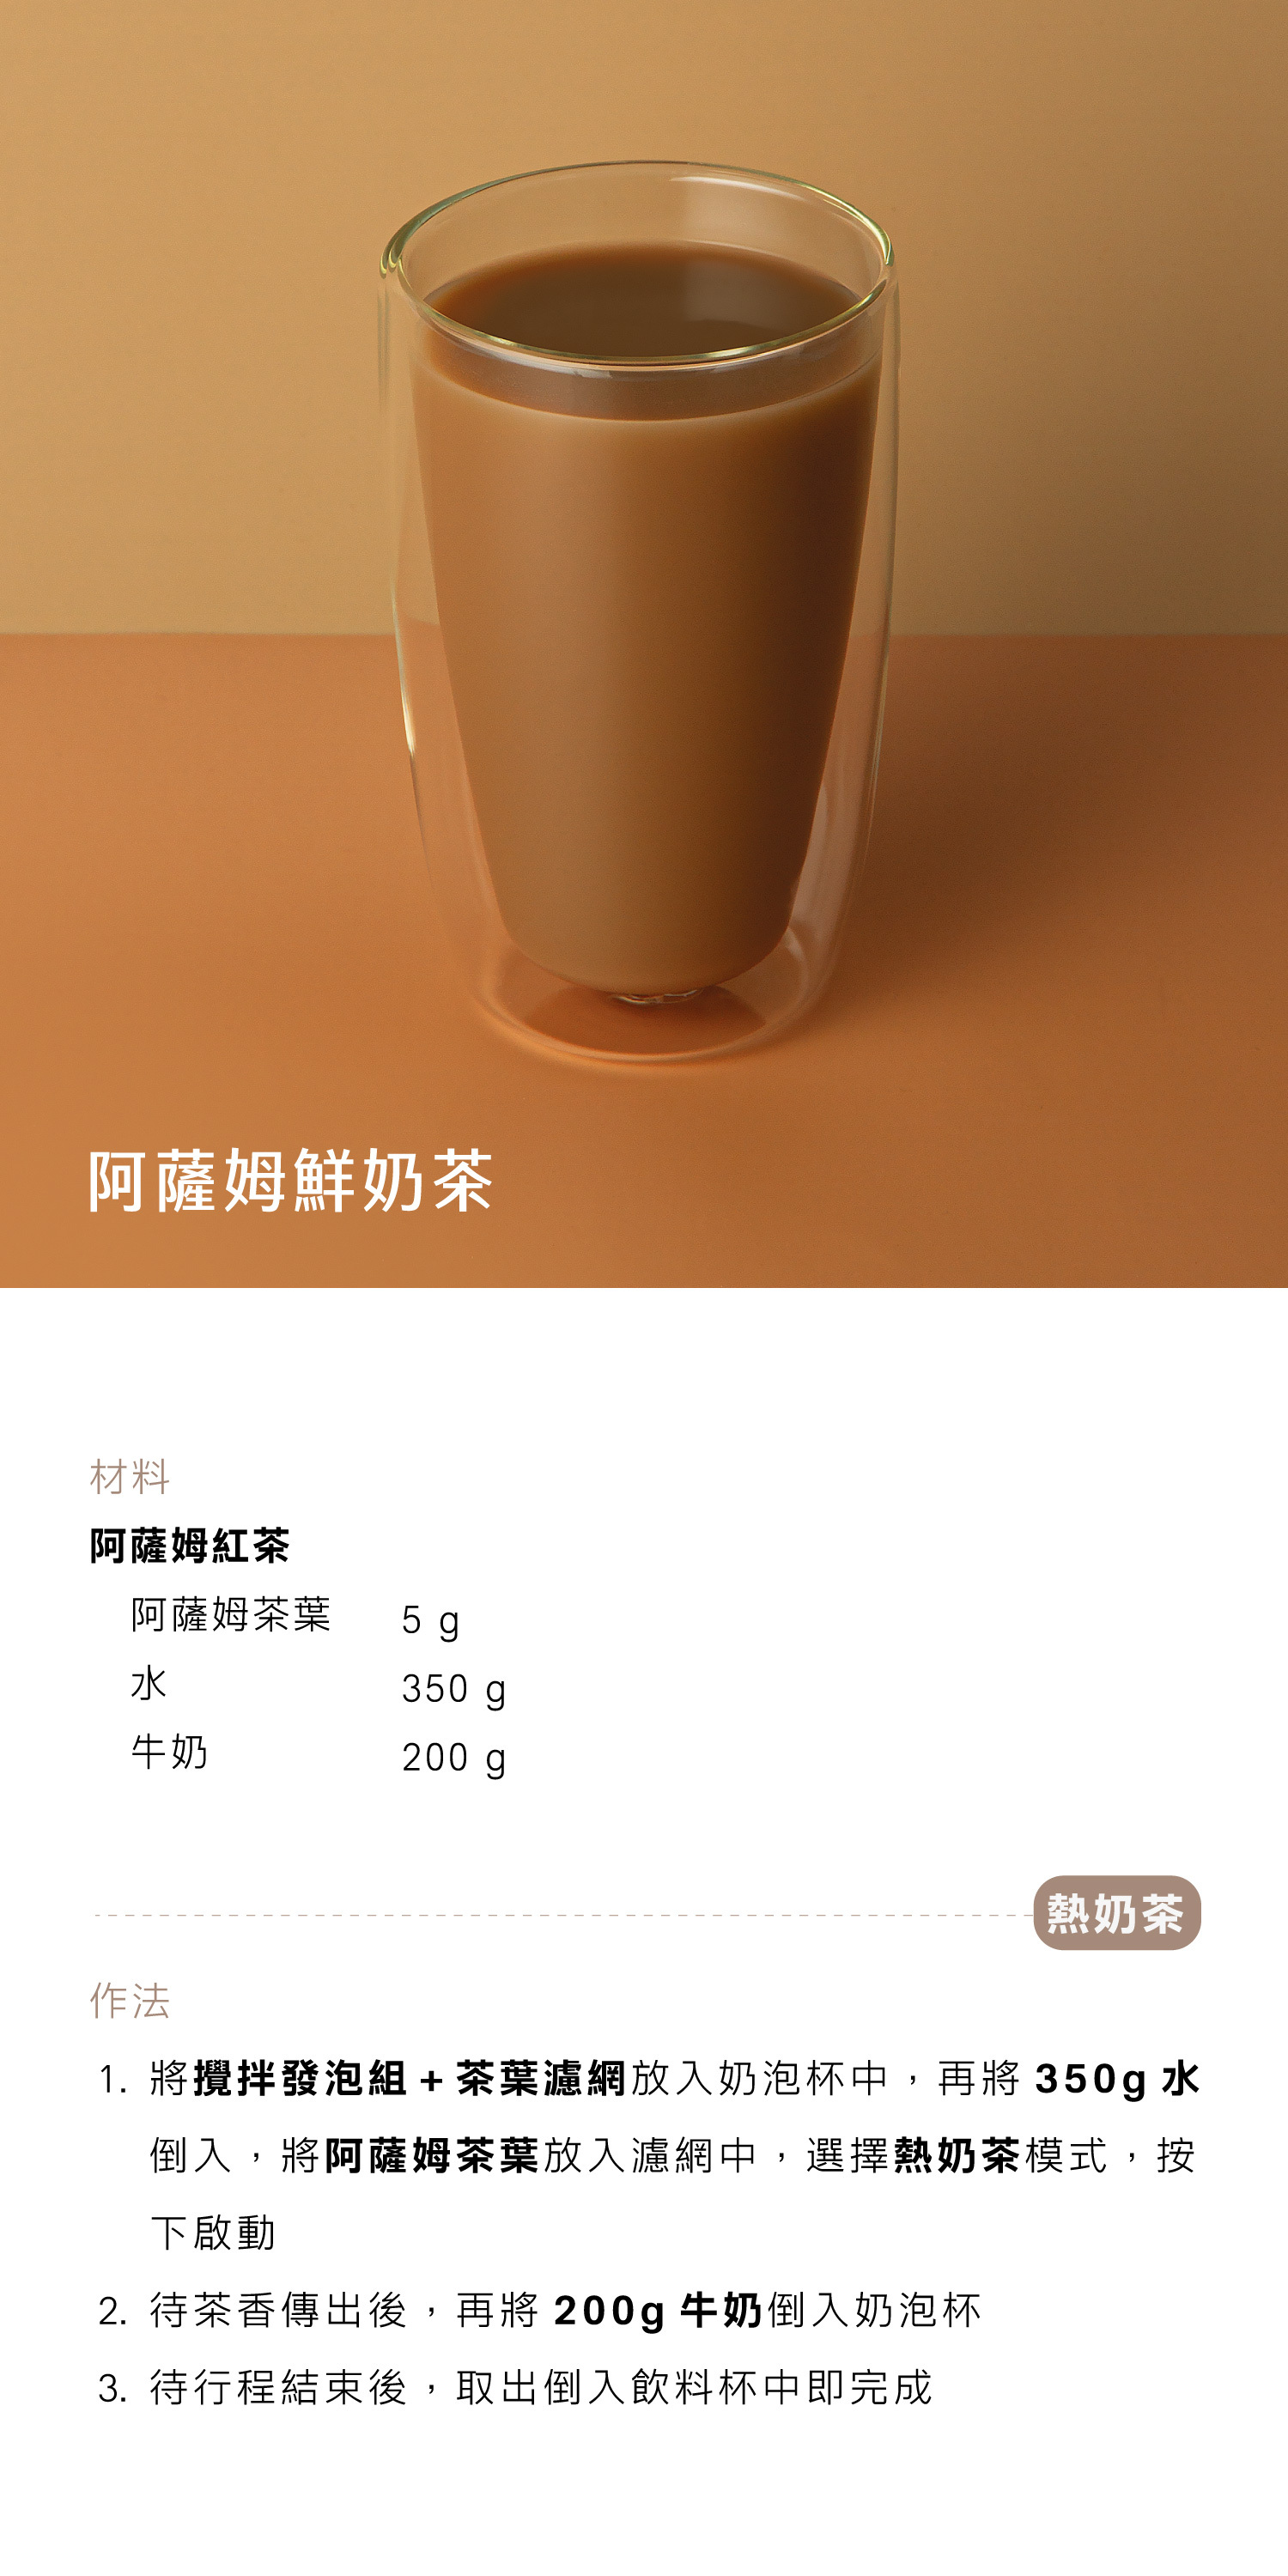 阿薩姆鮮奶茶 - AIWA 奶泡攪拌機 AMF-500 Recipe 食譜 飲料教學